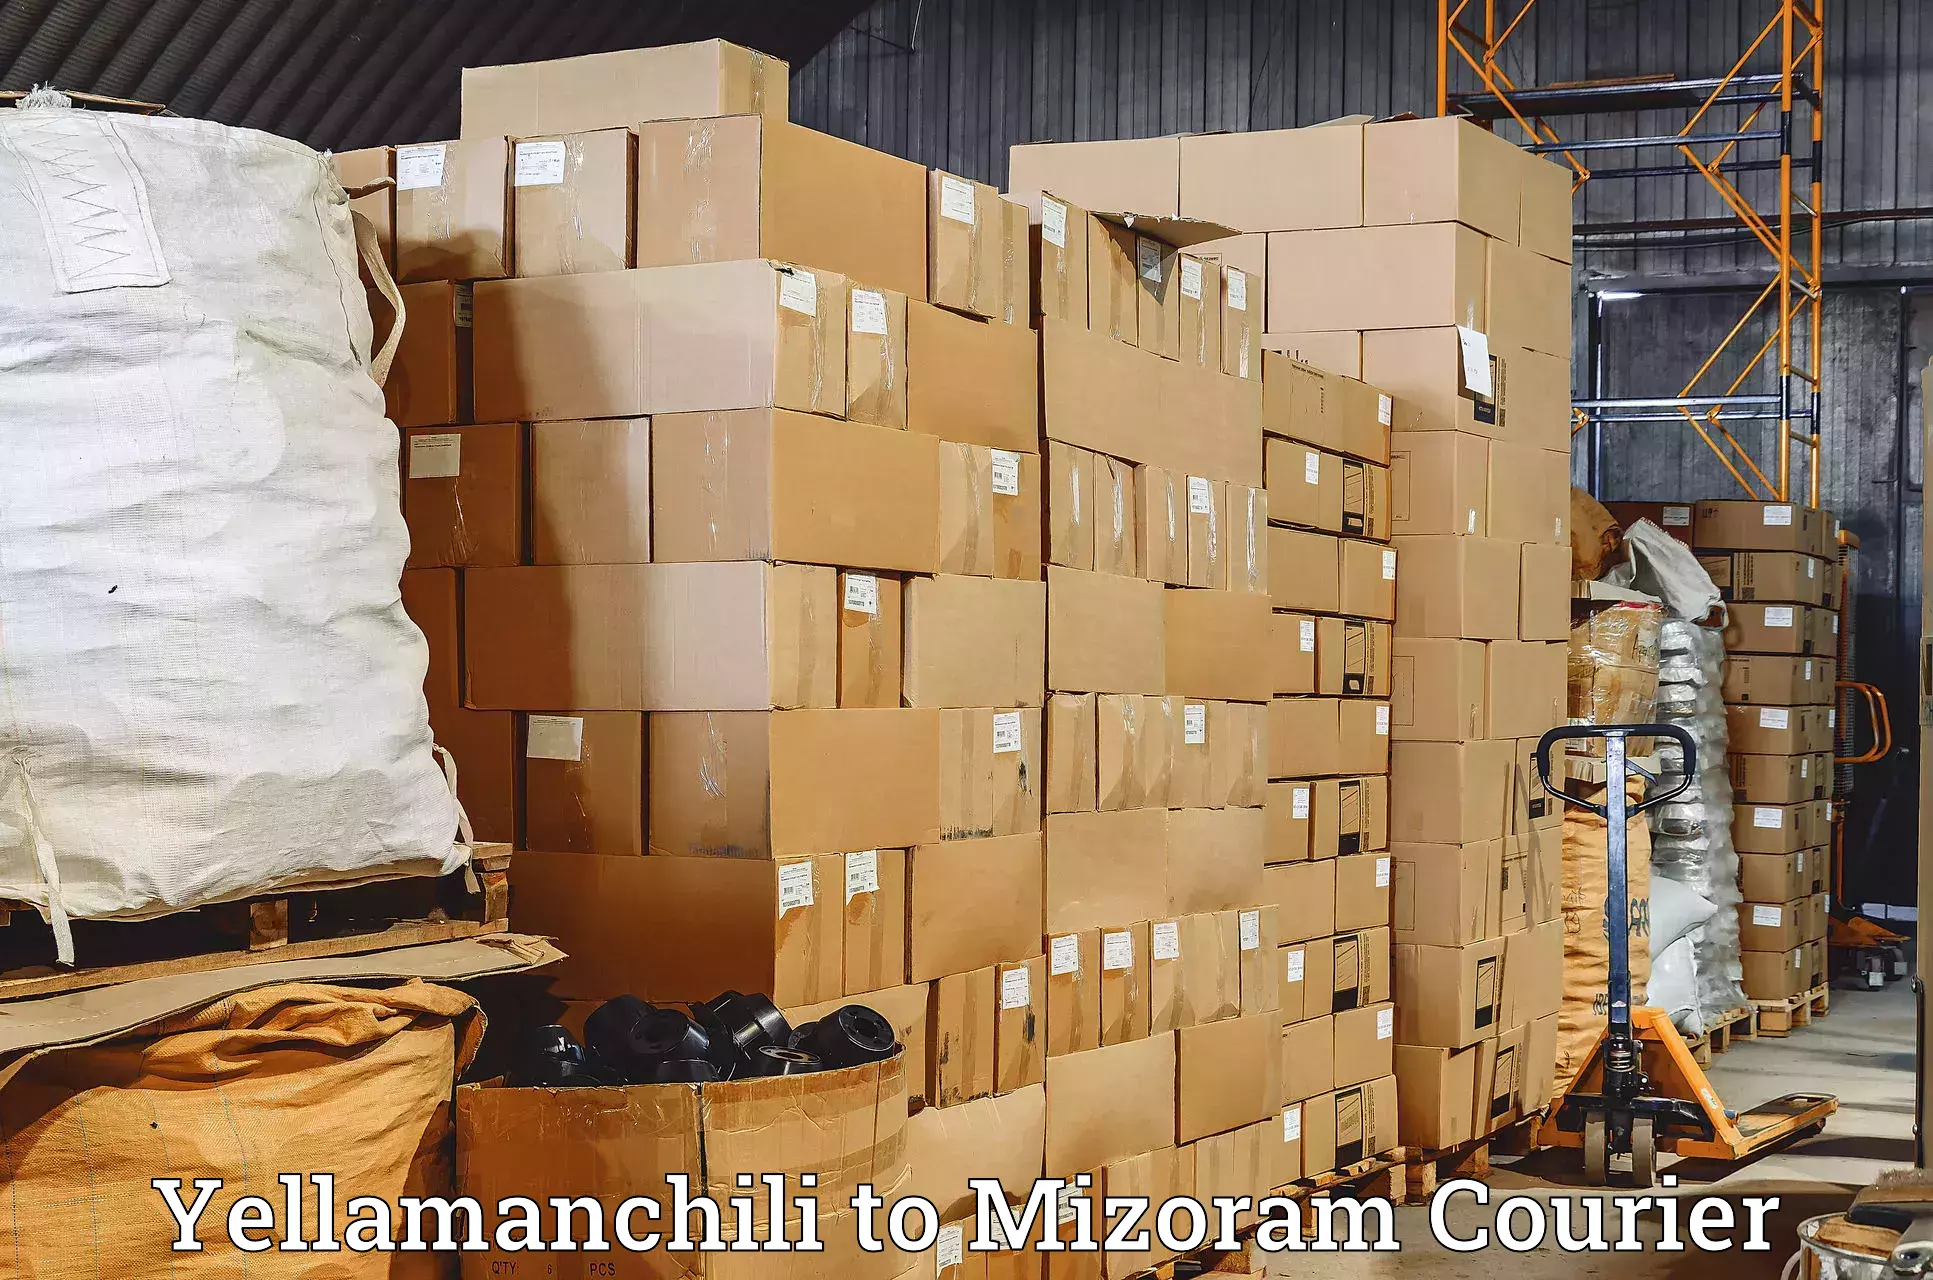 Dynamic courier operations Yellamanchili to Mizoram